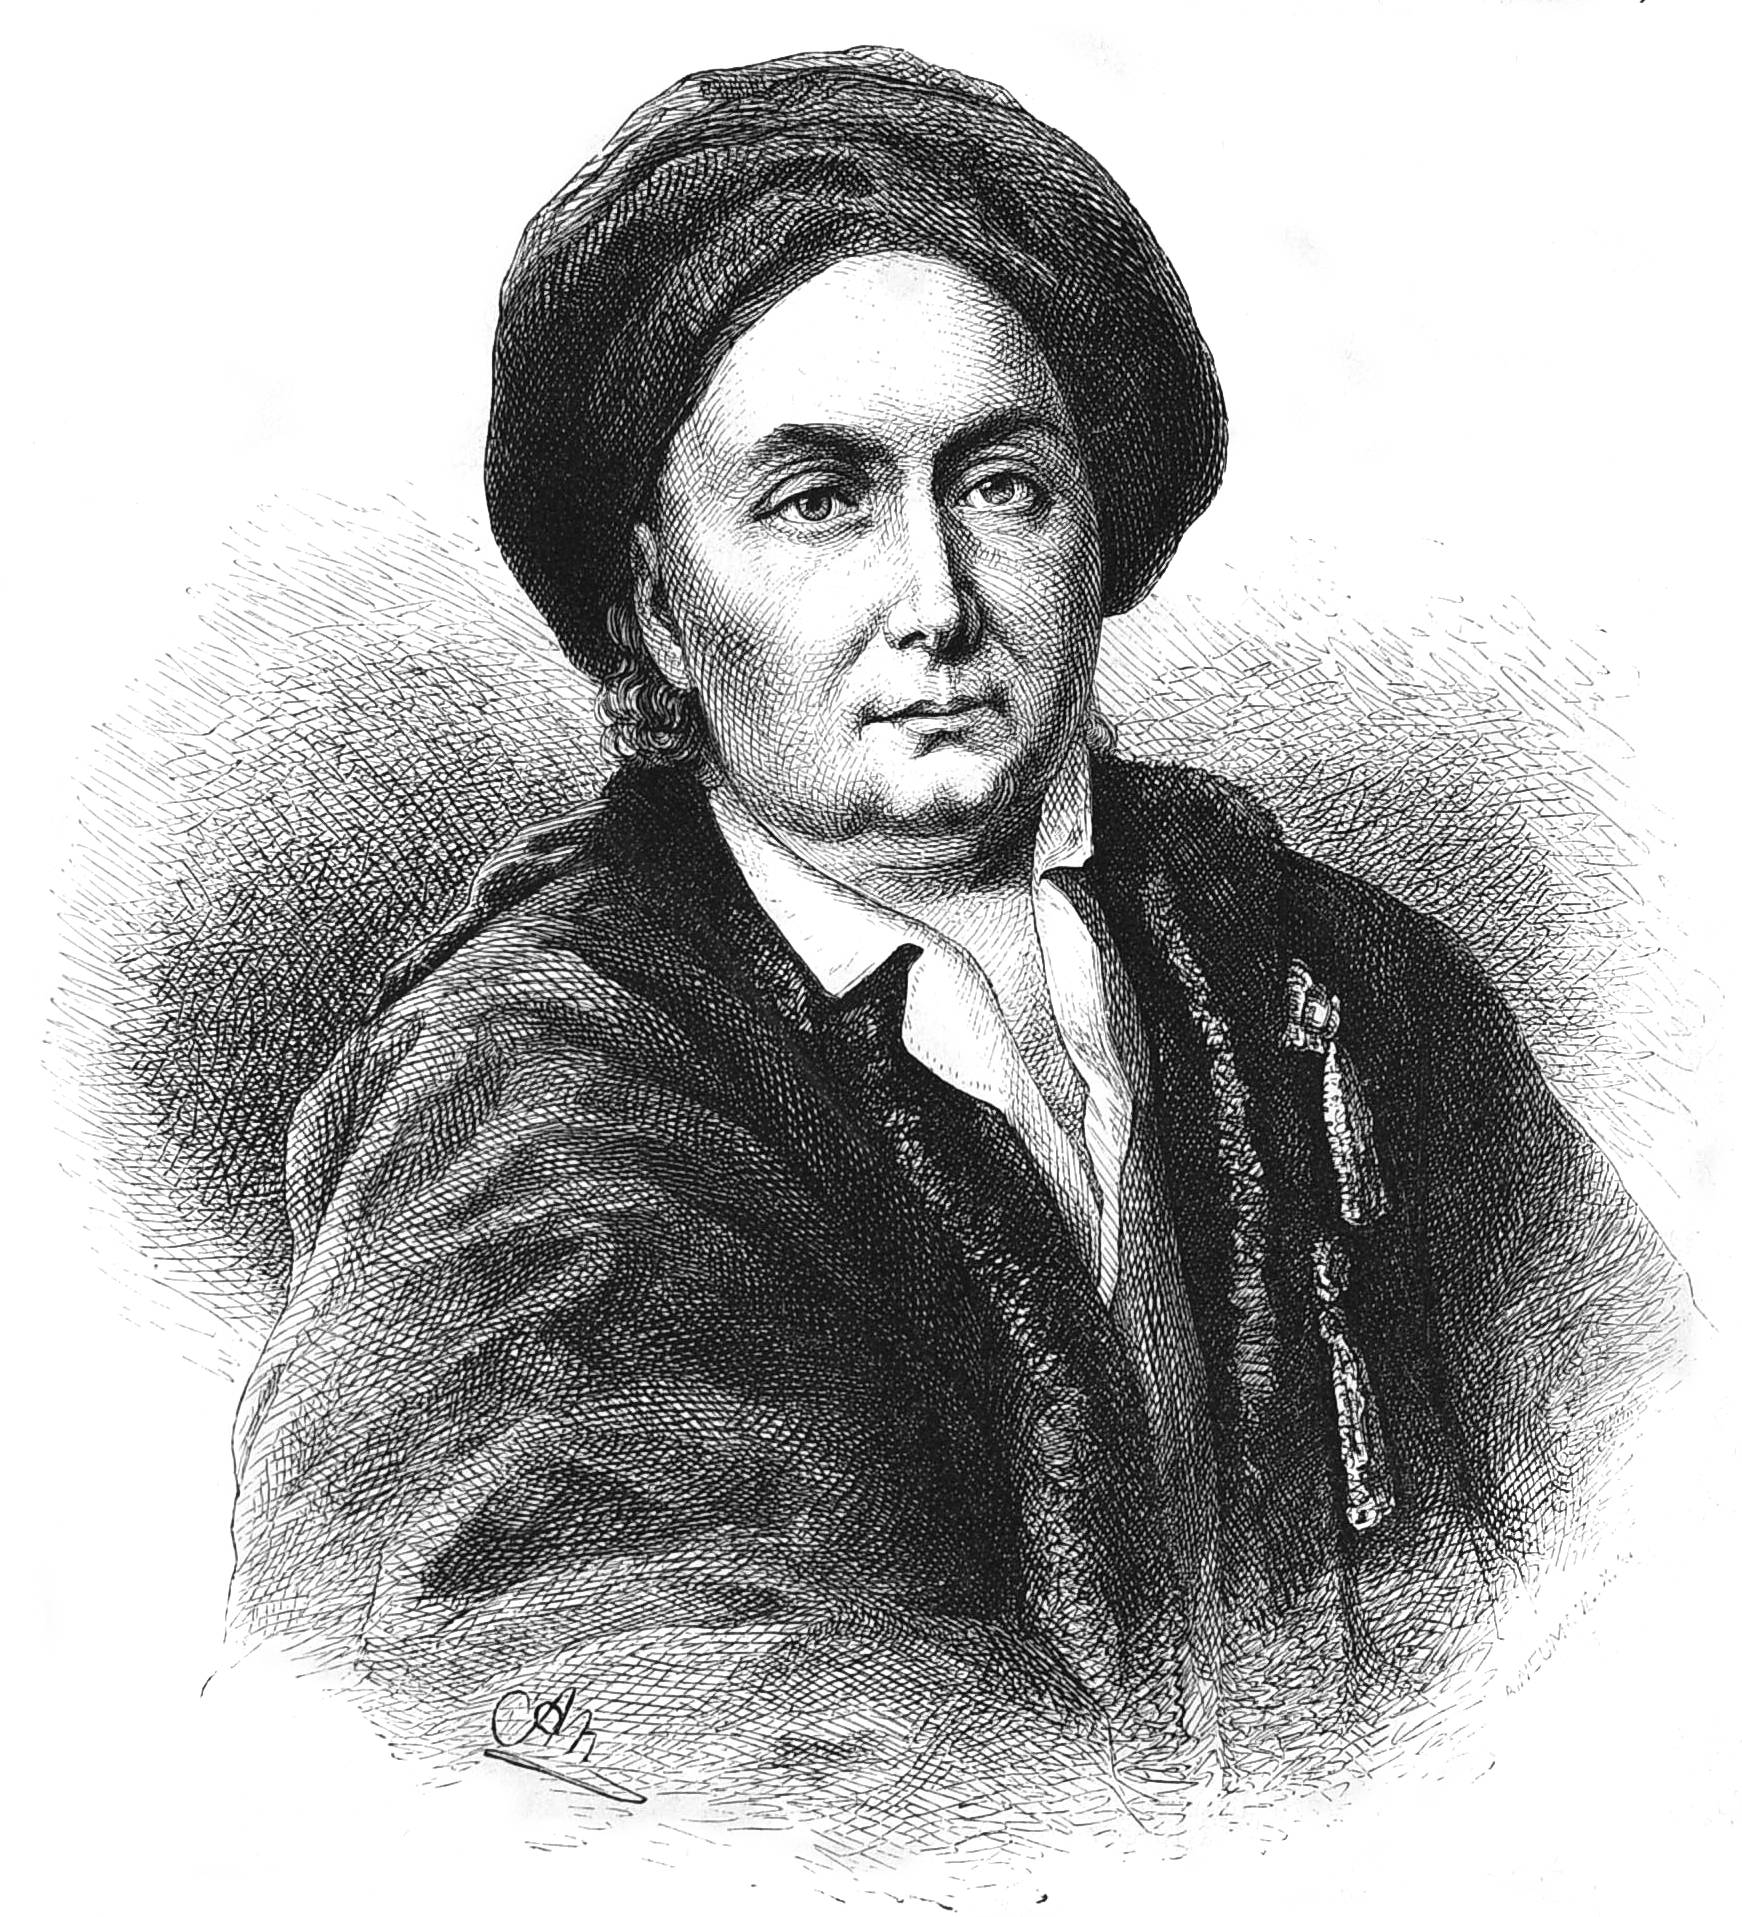 ルートヴィヒ・ヴァン・ベートーヴェン (1712-1773) - Wikipedia